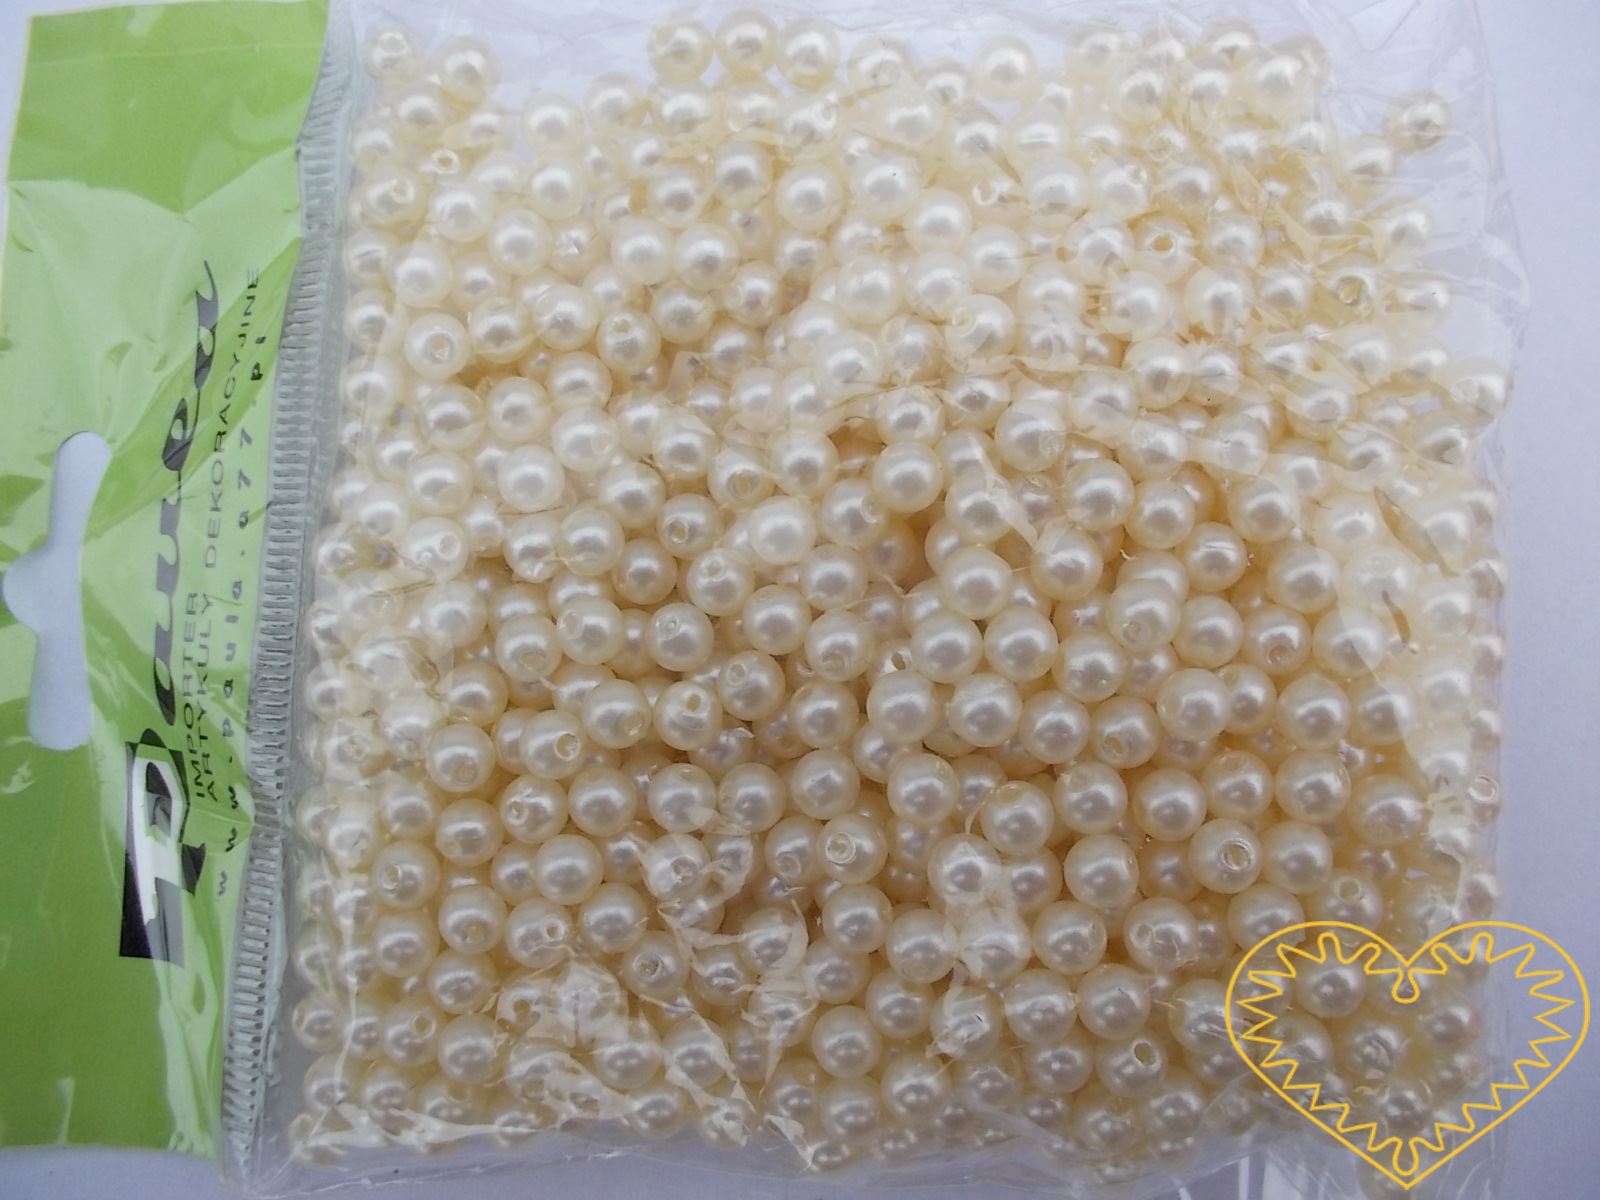 Smetanové plastové perličky 5 mm - jedno balení má hmotnost 50 g. Korálky jsou vhodné pro tvoření s dětmi, pro výrobu bižuterie i dalších ozdob. Smetanové perličky se také hodí k svatebním dekoracím a do svatebních kytic.